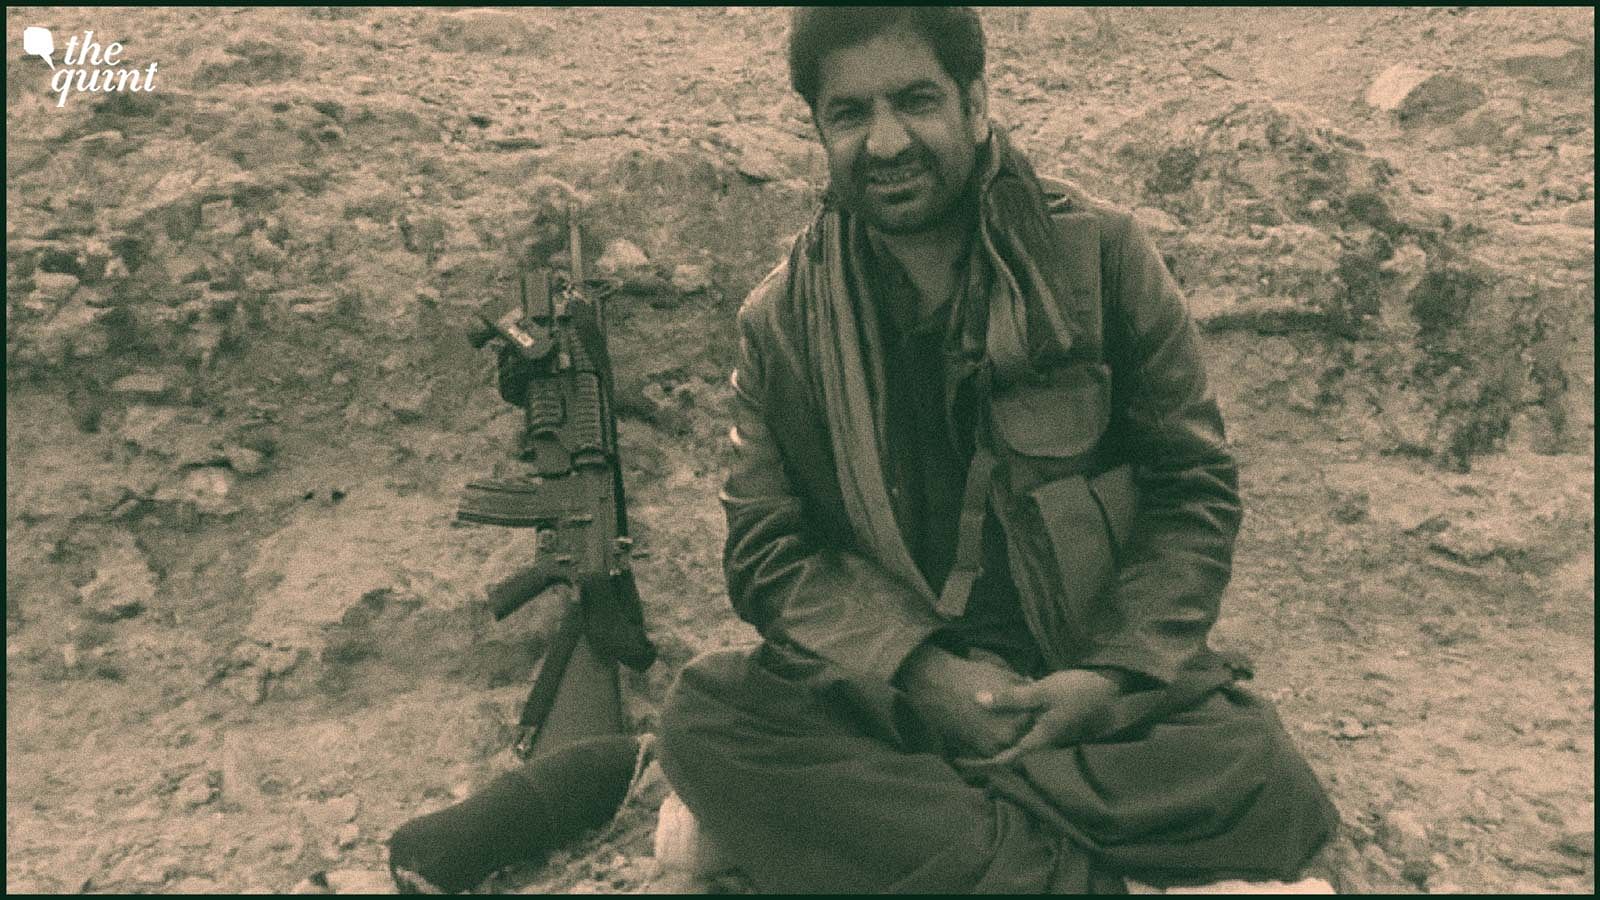 <div class="paragraphs"><p>A picture of&nbsp;Gulzar Imam with a machine gun.&nbsp;</p></div>